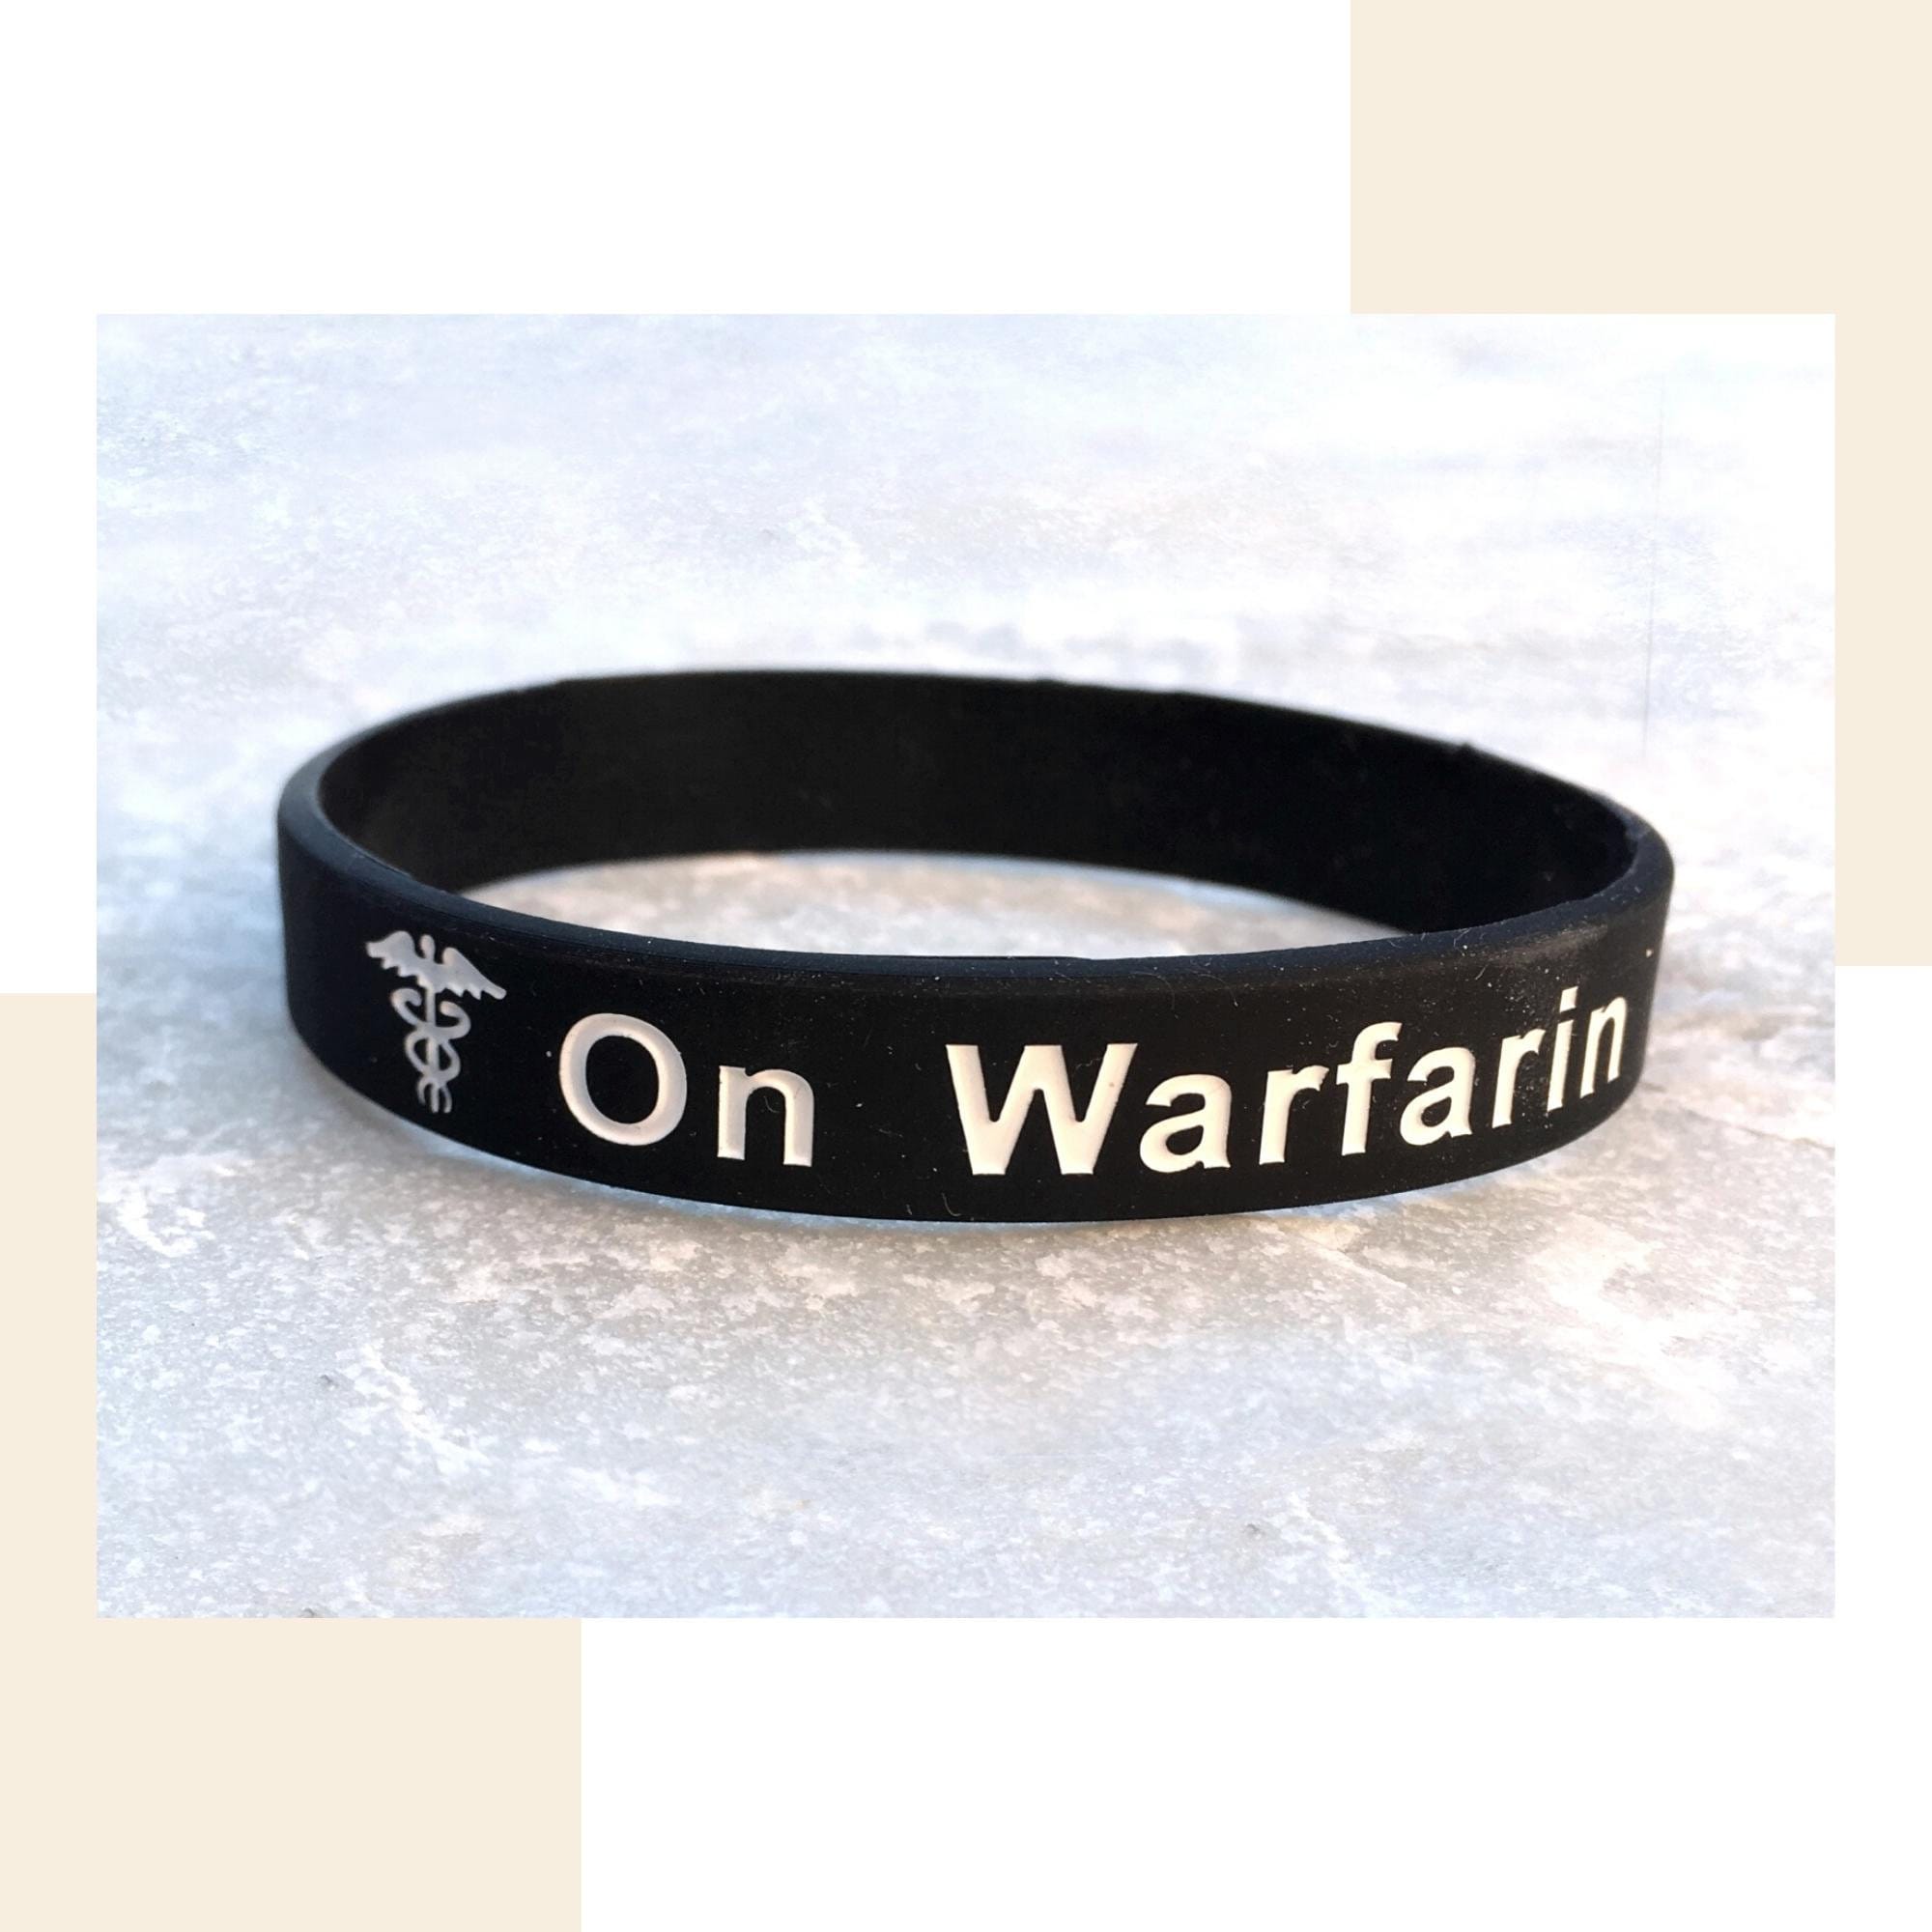 On Warfarin Medical Alert Wristband Bracelets Silicone ID Band - Etsy UK